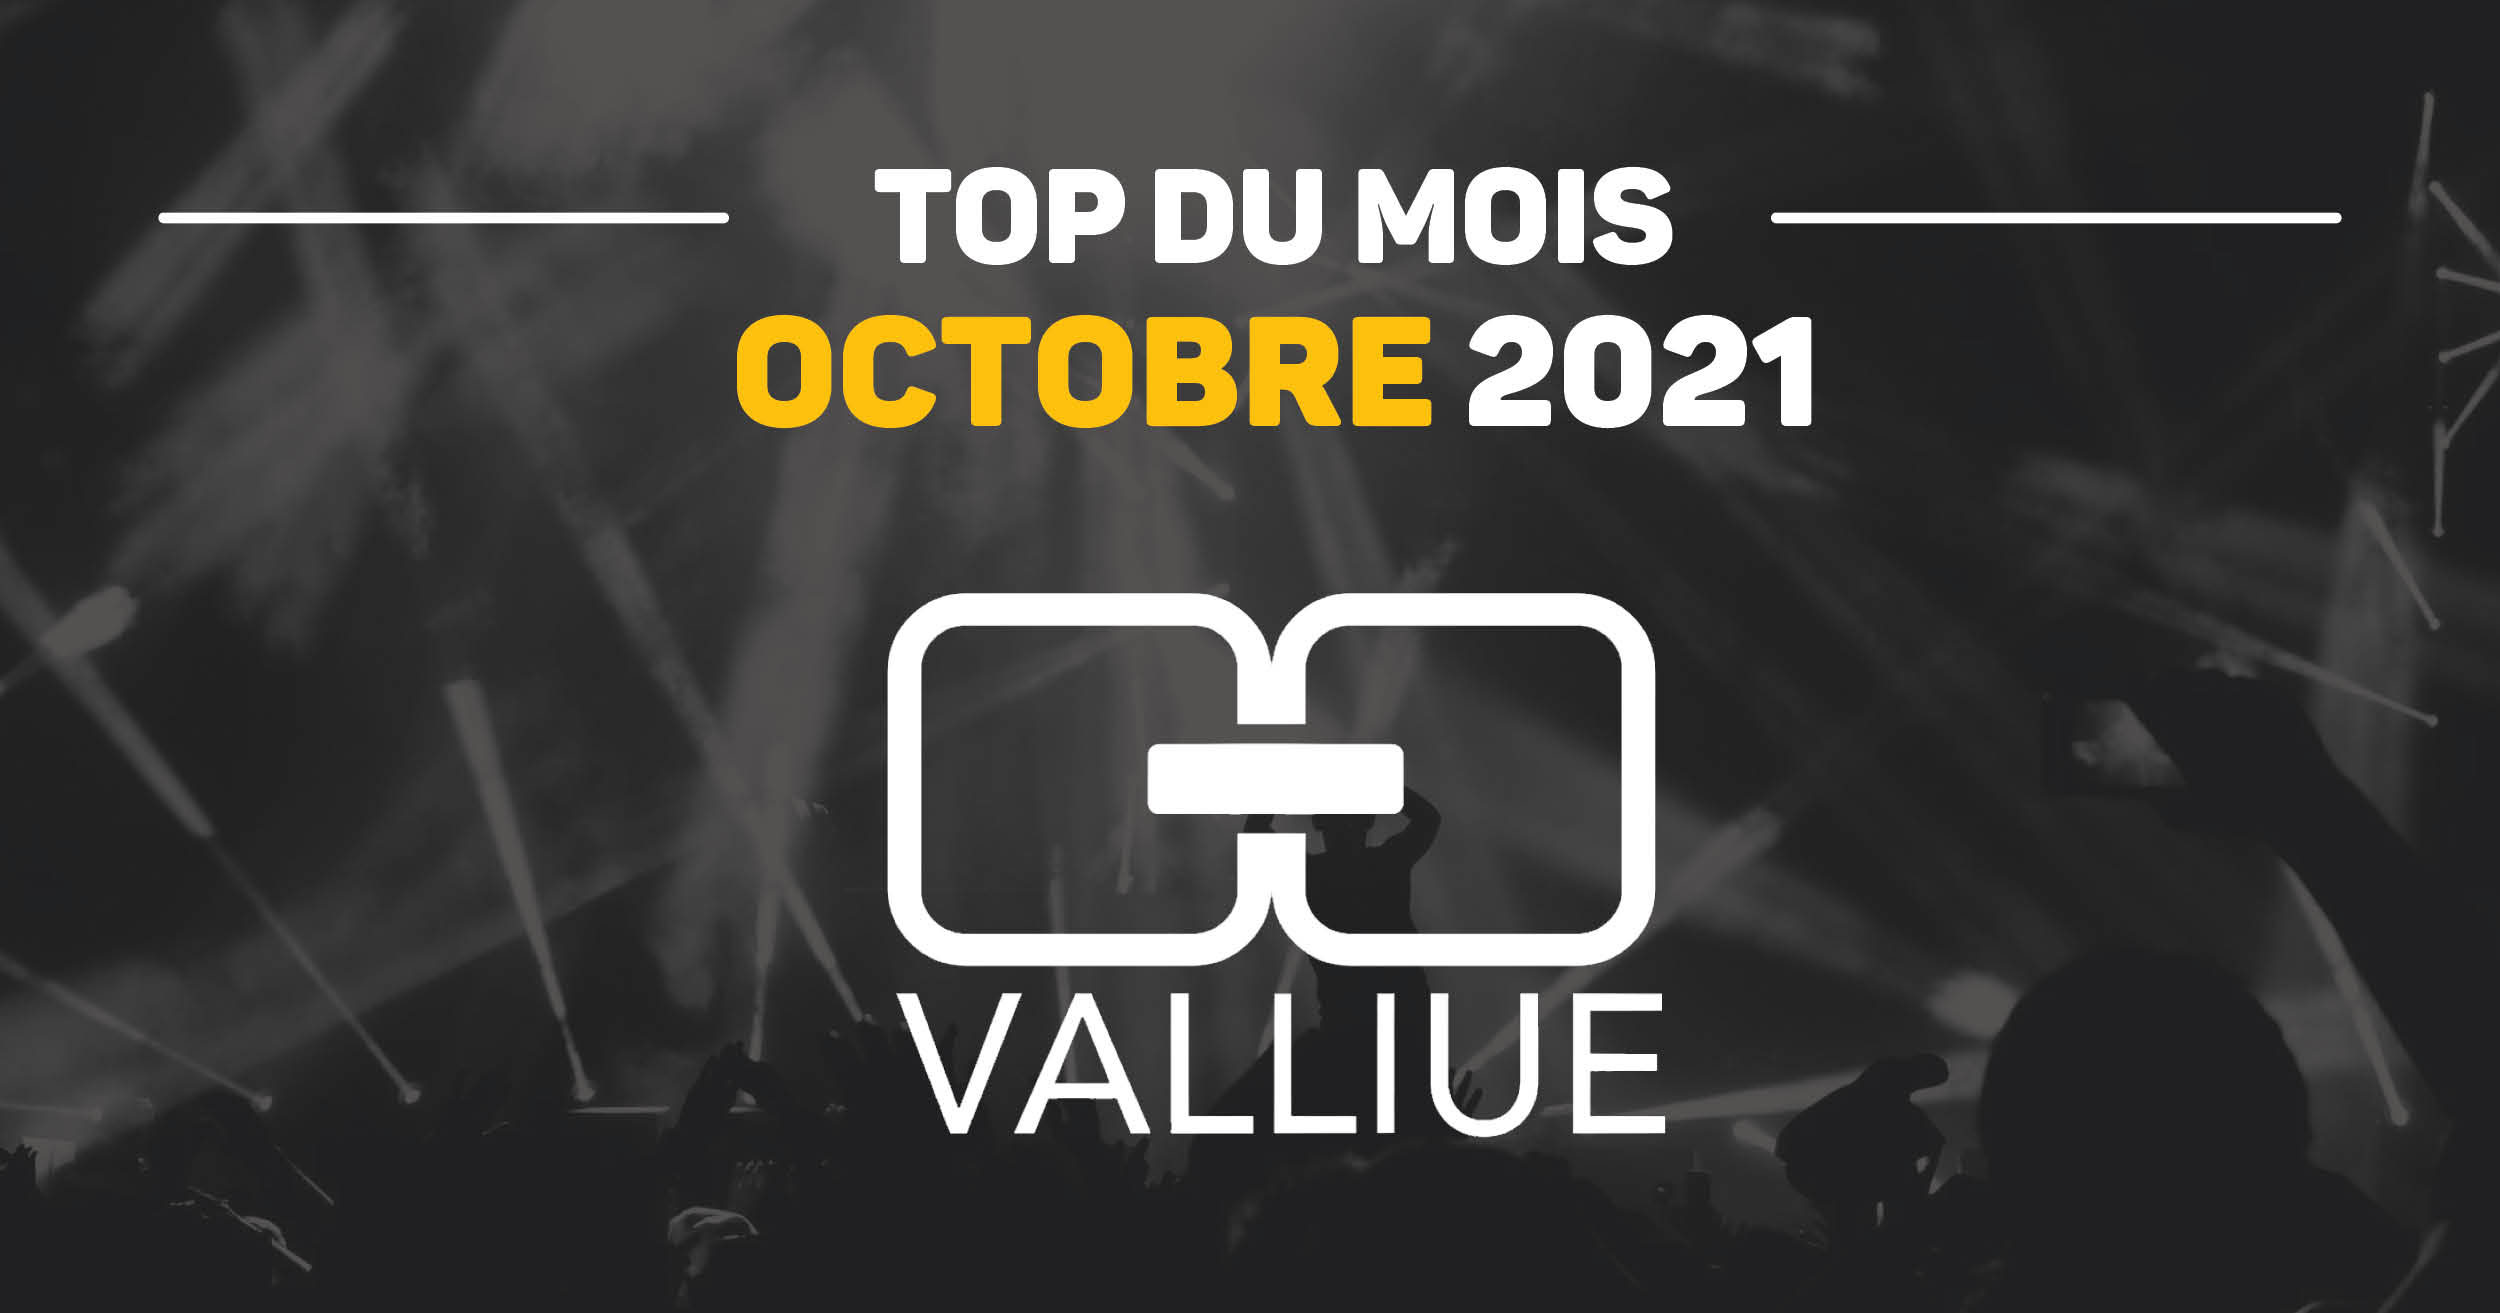 top-du-mois-valliue_octobre21_facebook